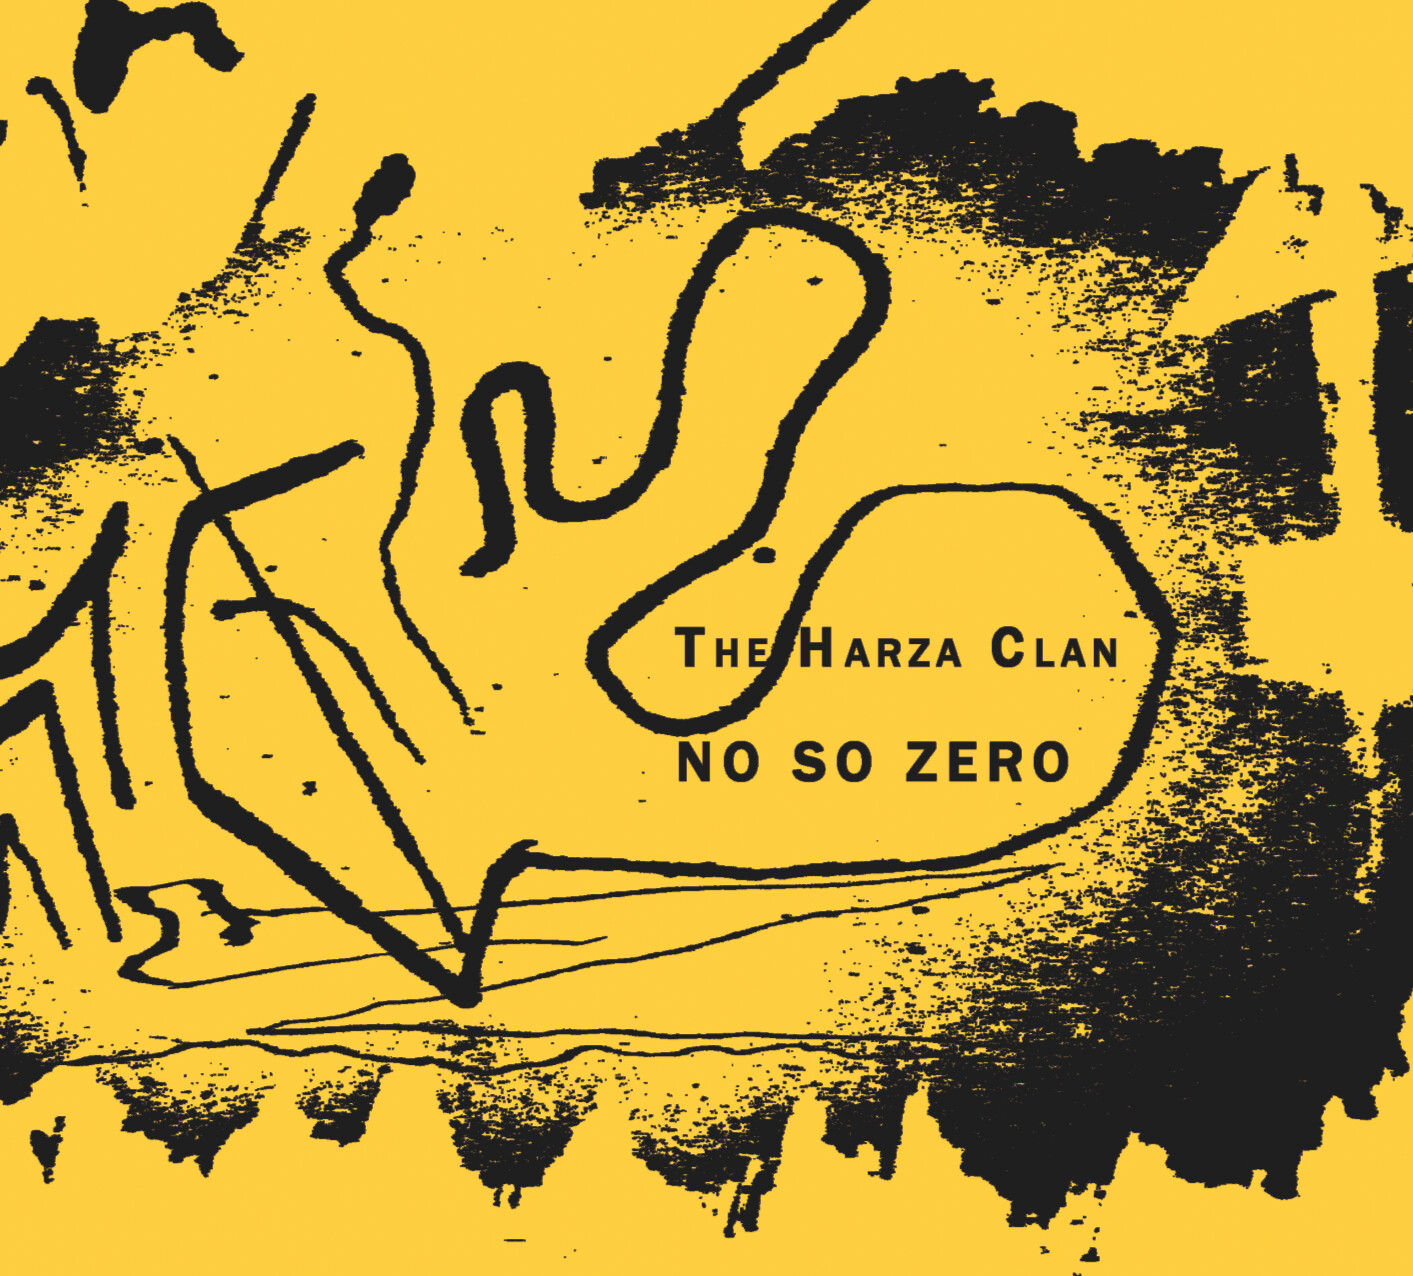 PR-028.1 - The Harza Clan – No So Zero - black vinyl - 7